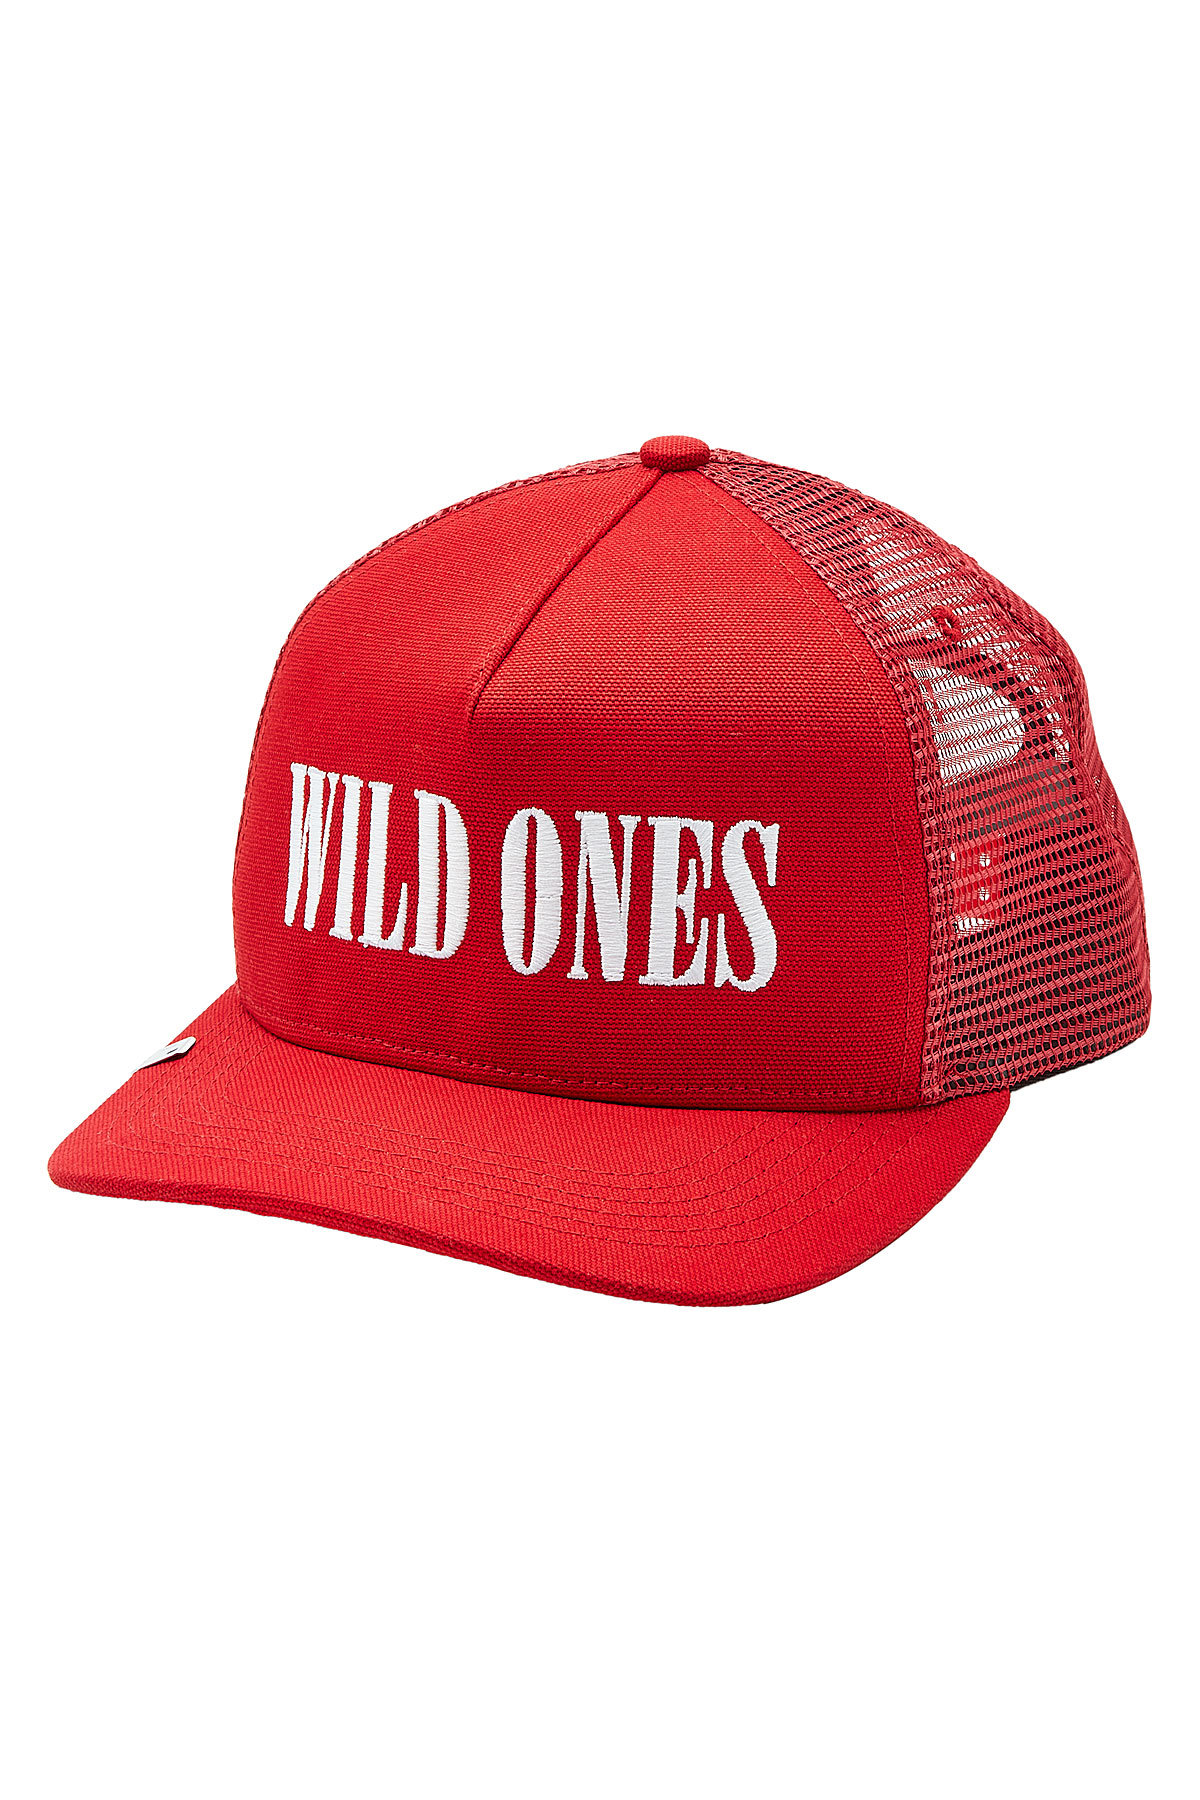 Wild Ones Trucker Hat by Amiri